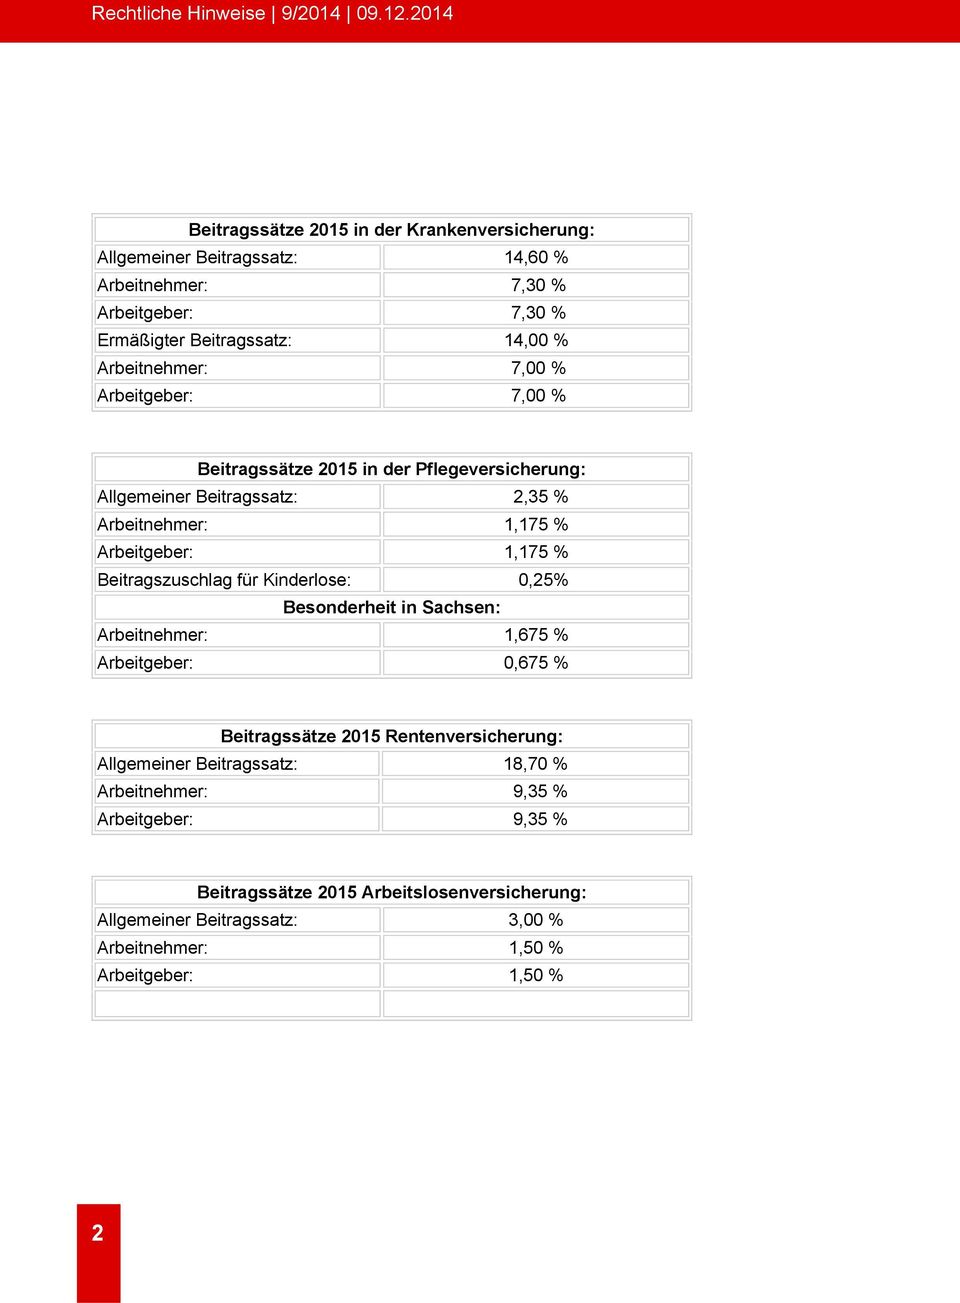 Beitragszuschlag für Kinderlose: 0,25% Besonderheit in Sachsen: Arbeitnehmer: 1,675 % Arbeitgeber: 0,675 % Beitragssätze 2015 Rentenversicherung: Allgemeiner